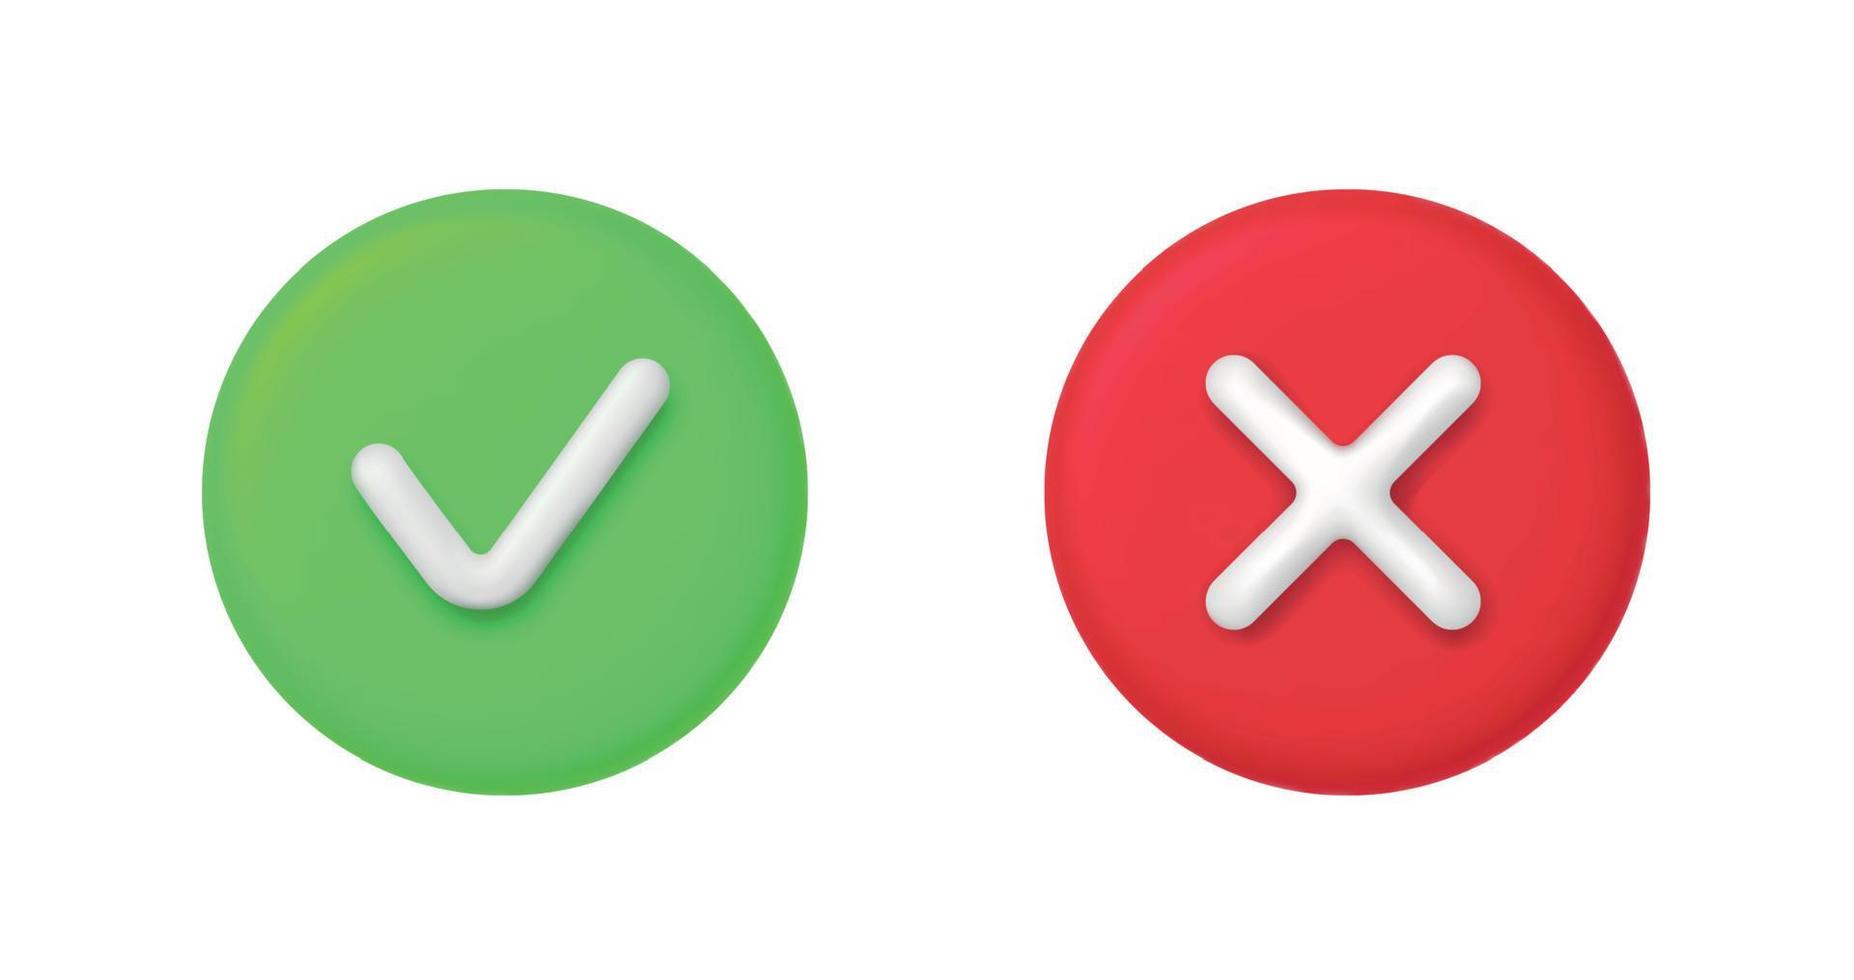 3d Derecha y incorrecto botón en redondo forma. verde si y rojo No correcto incorrecto signo. marca de verificación garrapata rechazo, Cancelar, error, detener, negativo, acuerdo aprobación o confiar símbolo. vector ilustración